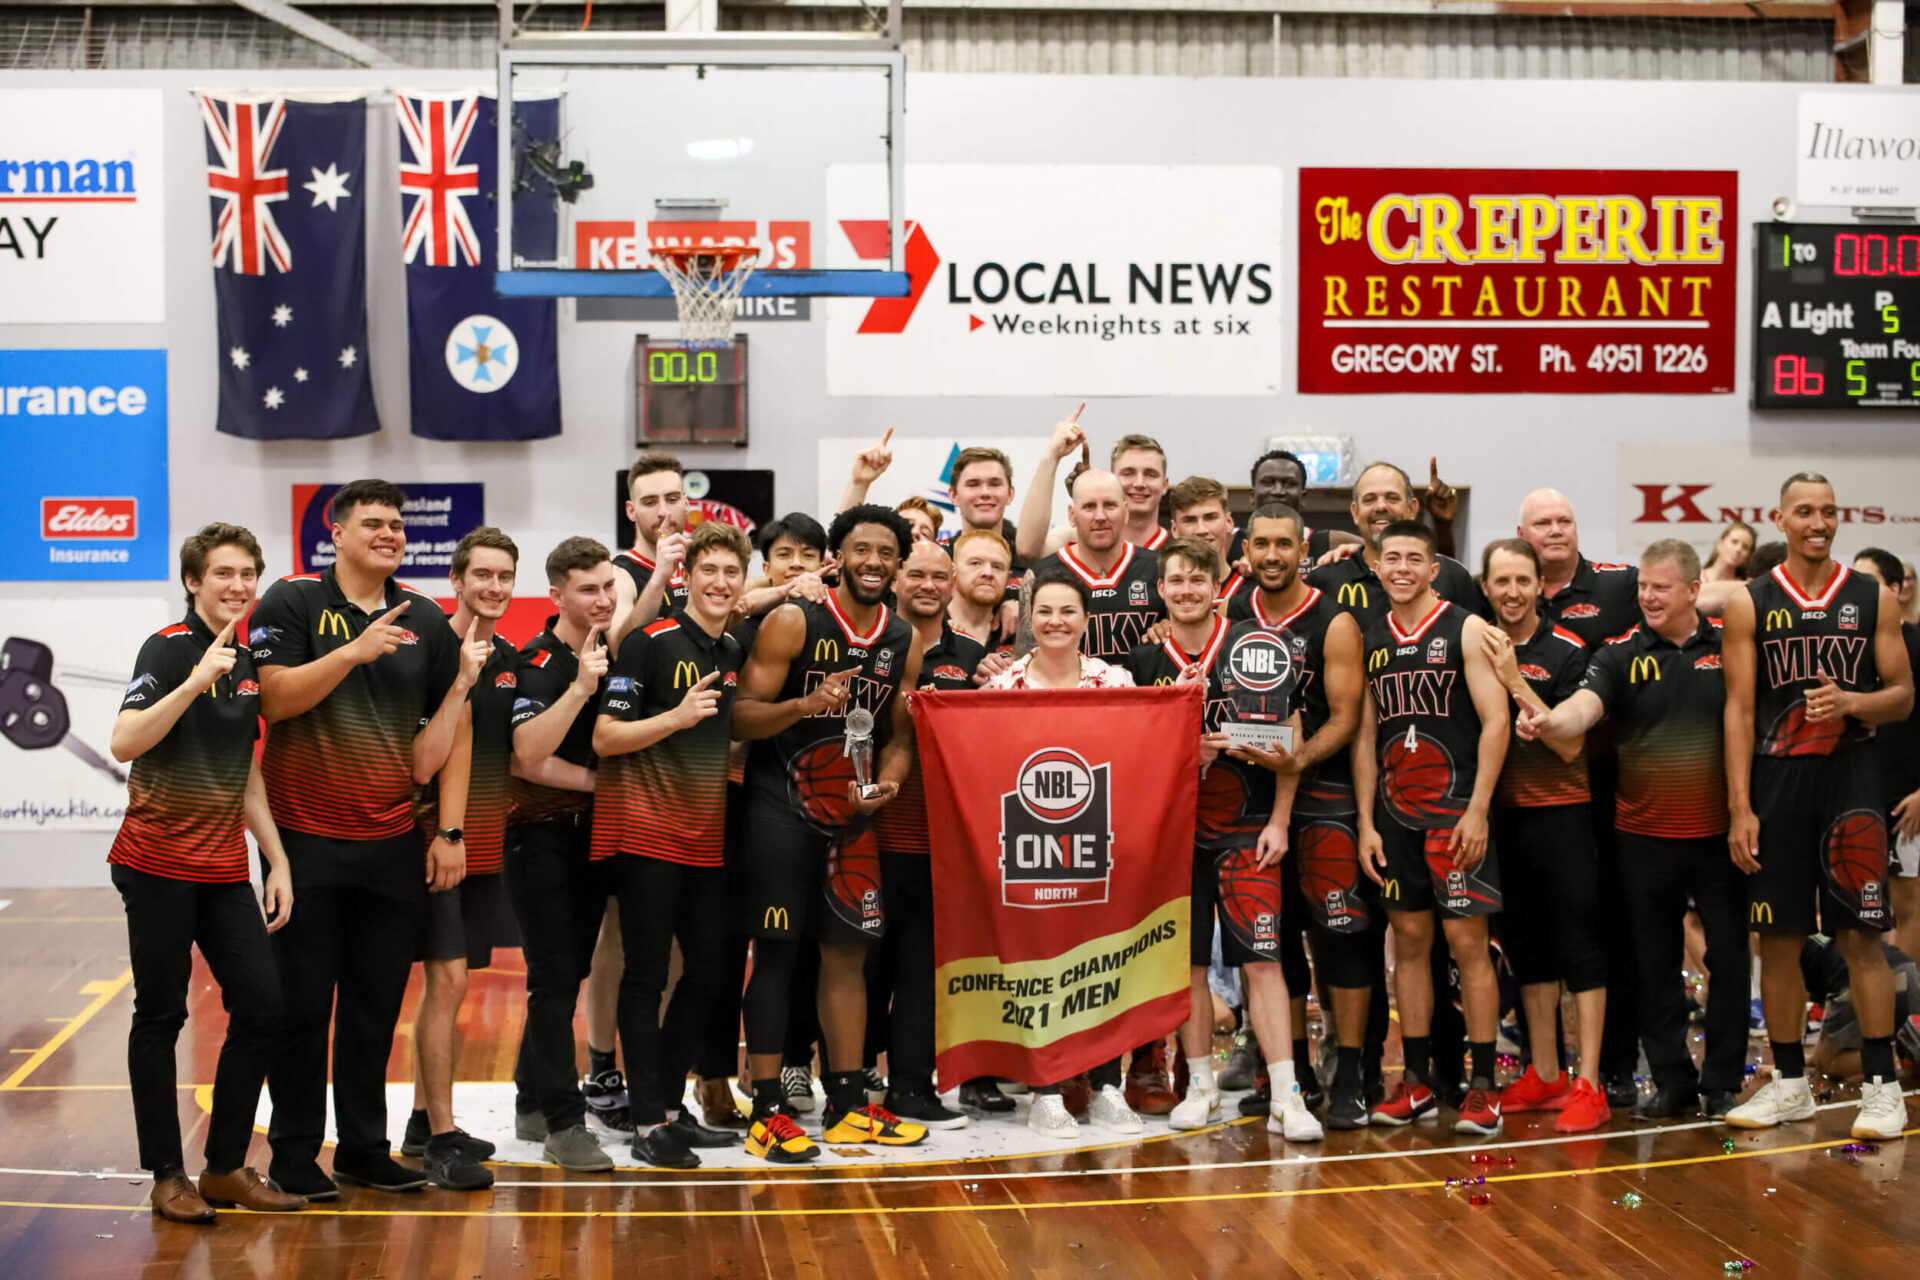 Championship Teams - 2021 McDonald’s Mackay Meteors Overall Record - 15 wins & 3 losses at Mackay Basketball